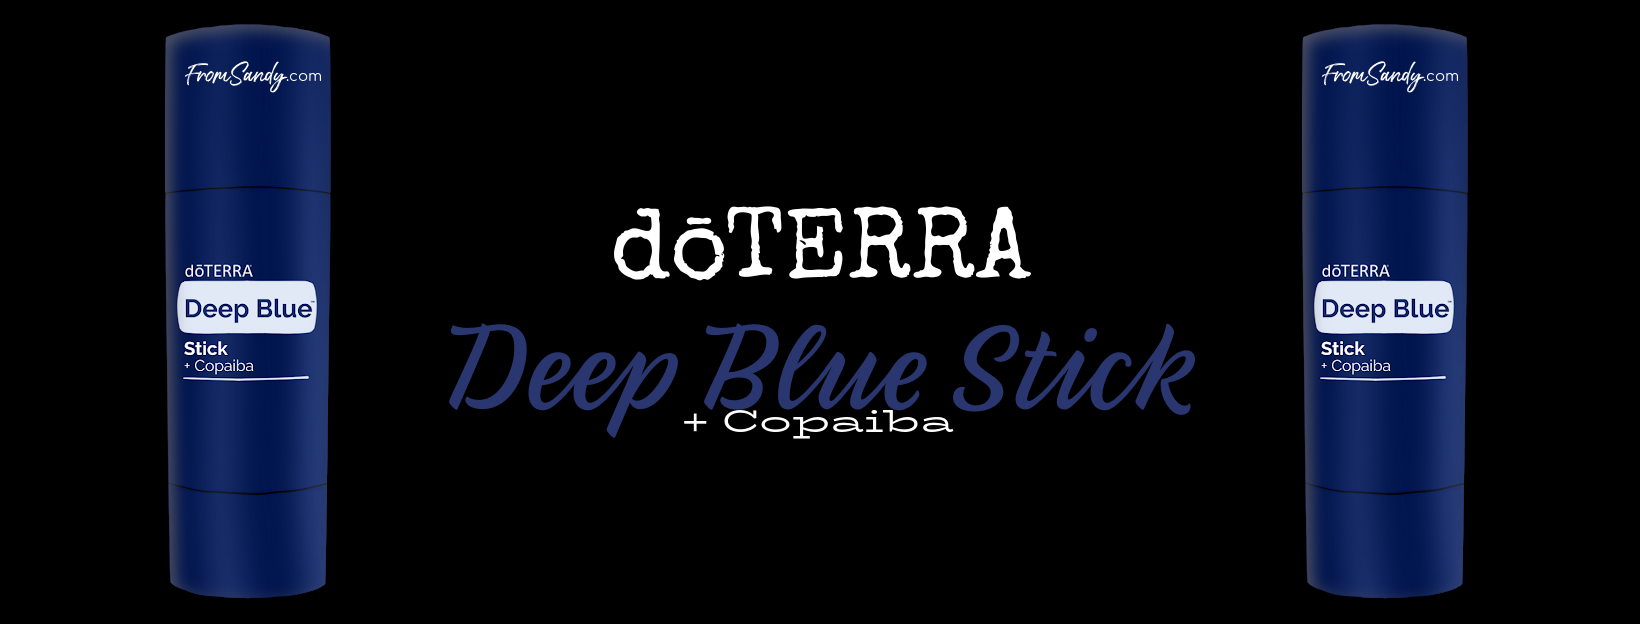 dōTERRA Deep Blue Stick | From Sandy